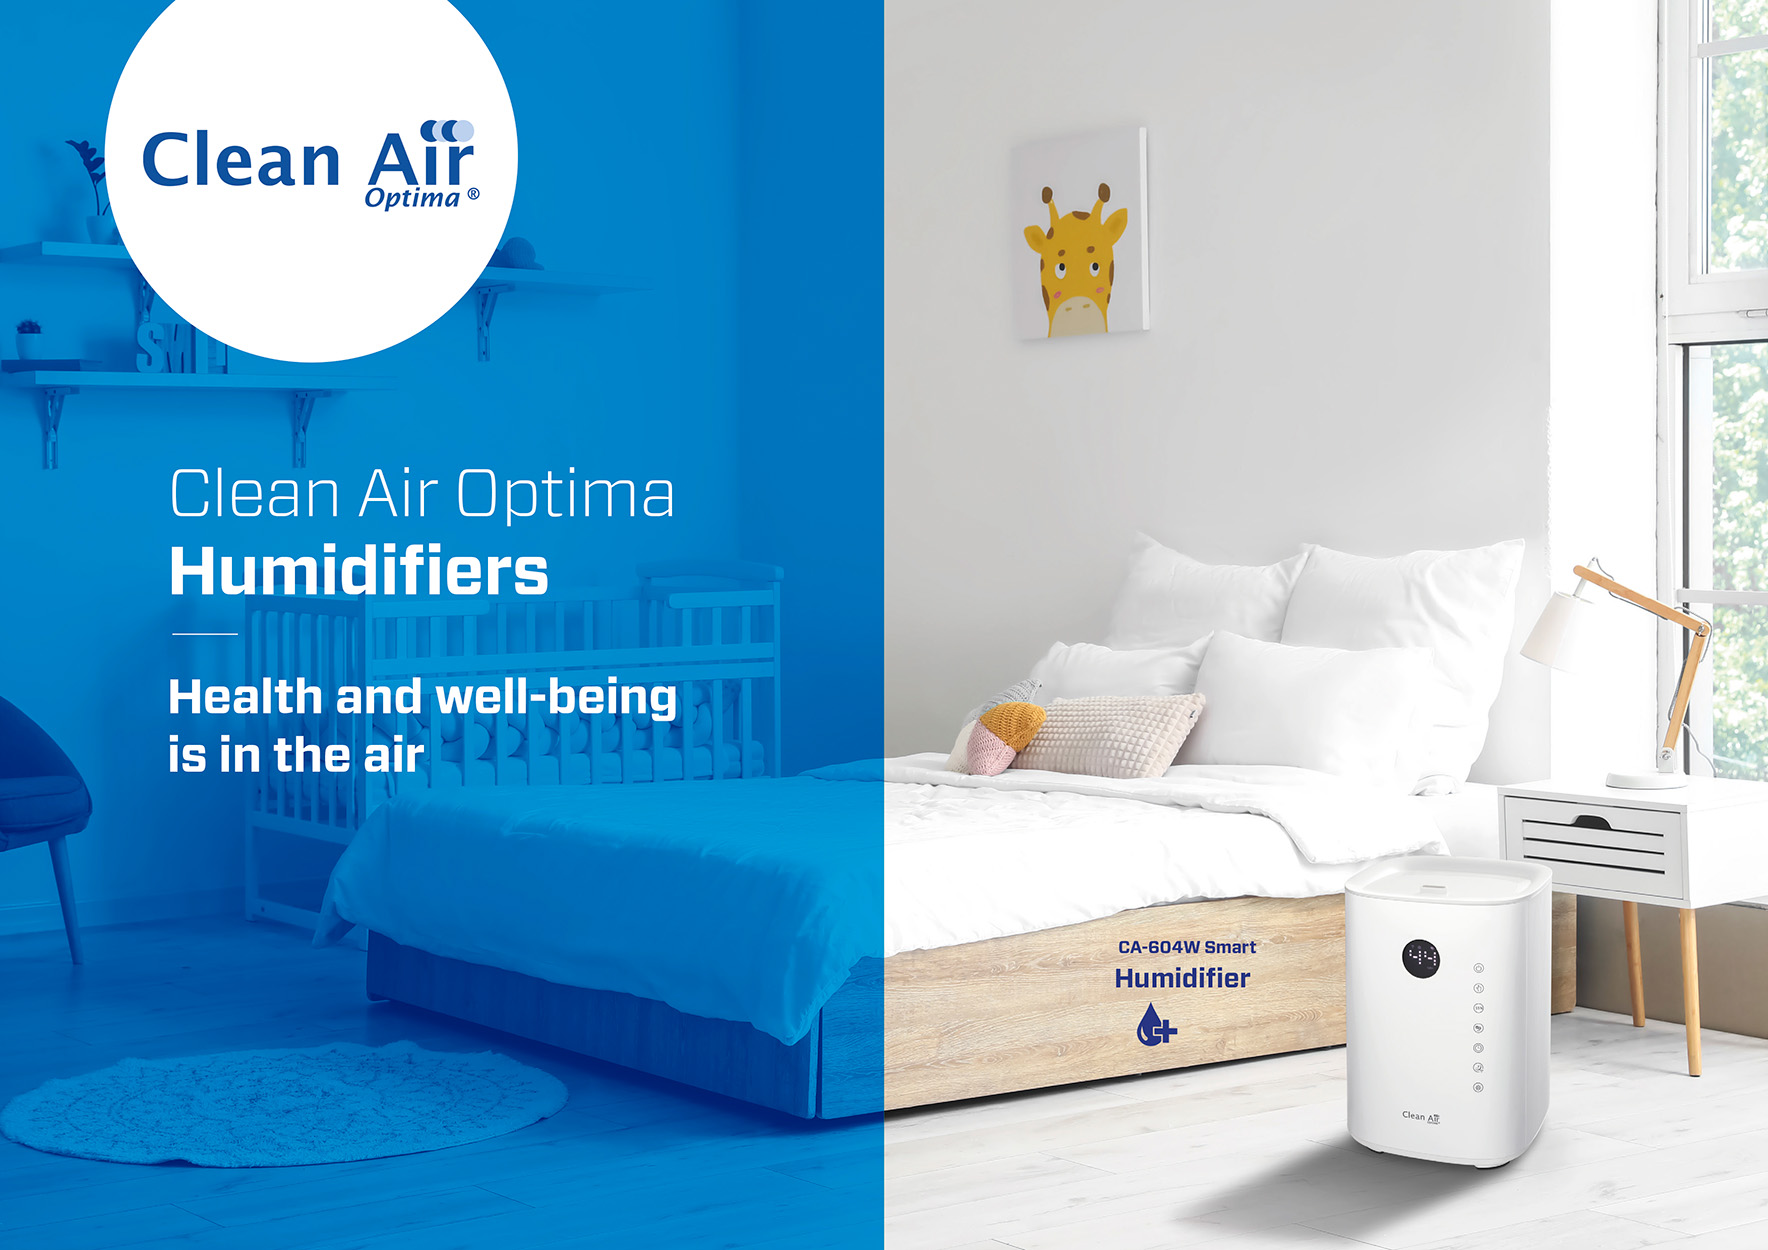 OPTIMA Luftbefeuchter AIR Smart m²) (Raumgröße: Top Filling Weiß CA-604W 55 CLEAN